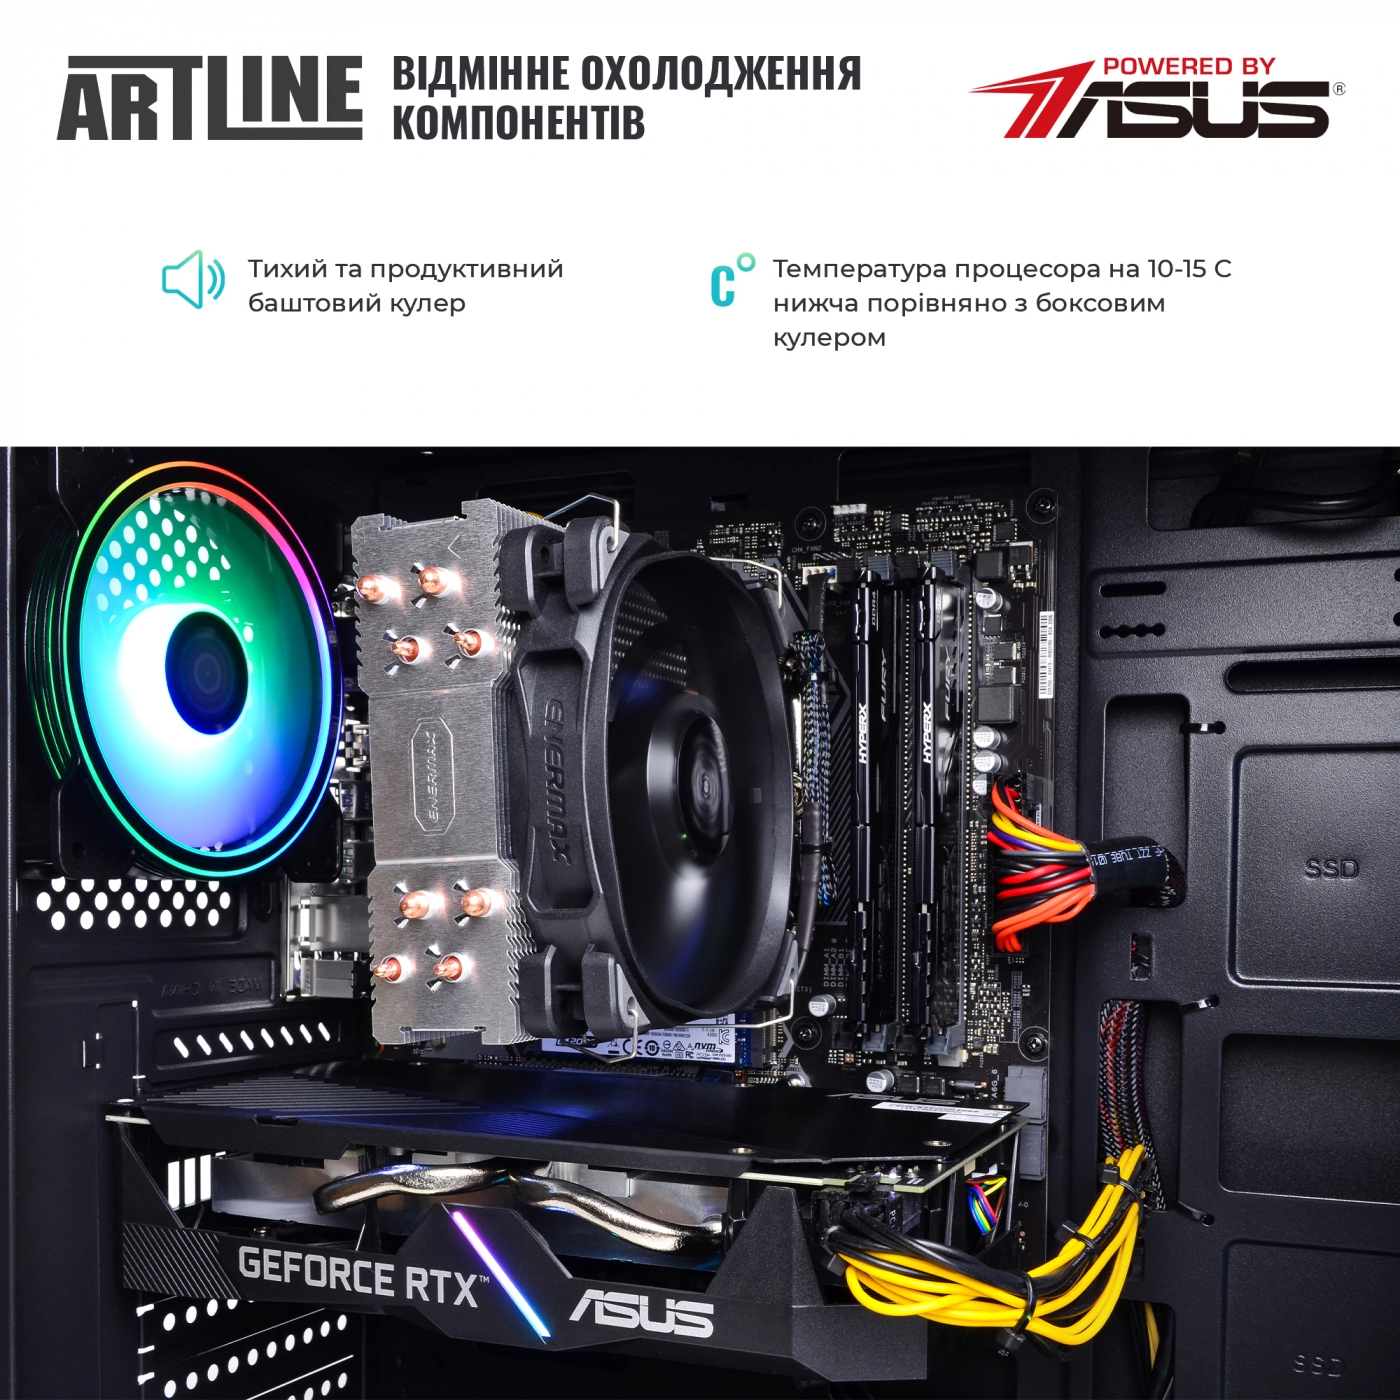 Купить Компьютер ARTLINE Gaming X55v44 - фото 6